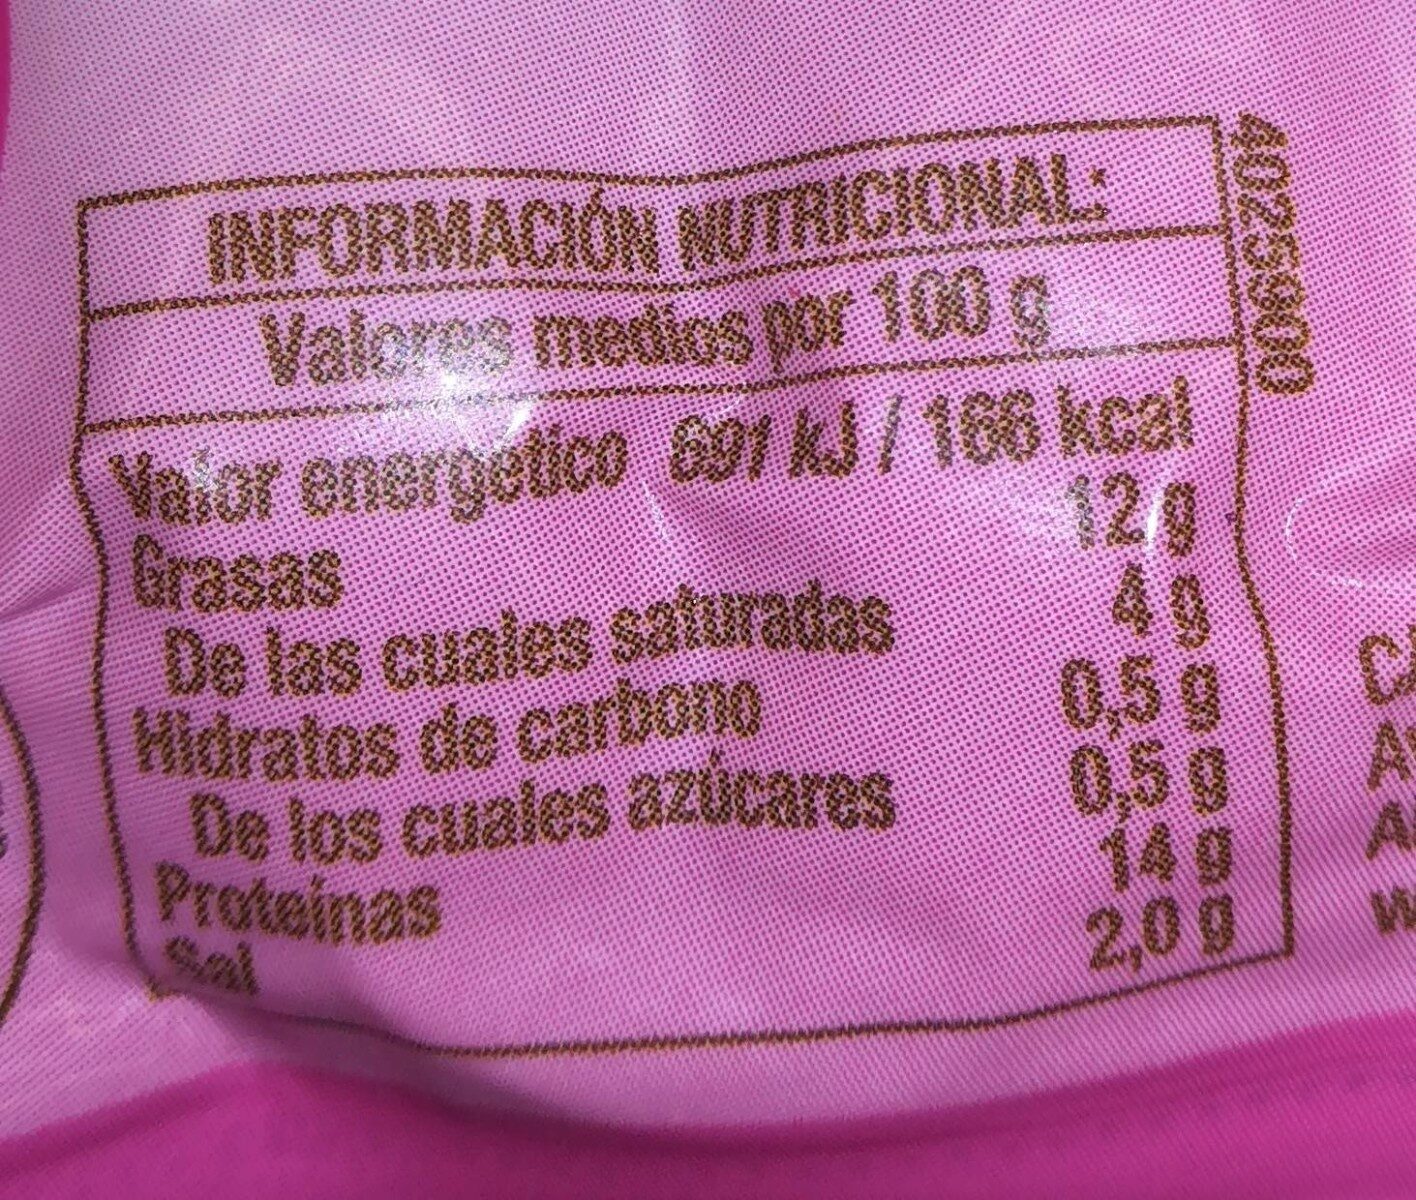 Cuida-t+ salchichas de pavo - Nutrition facts - es